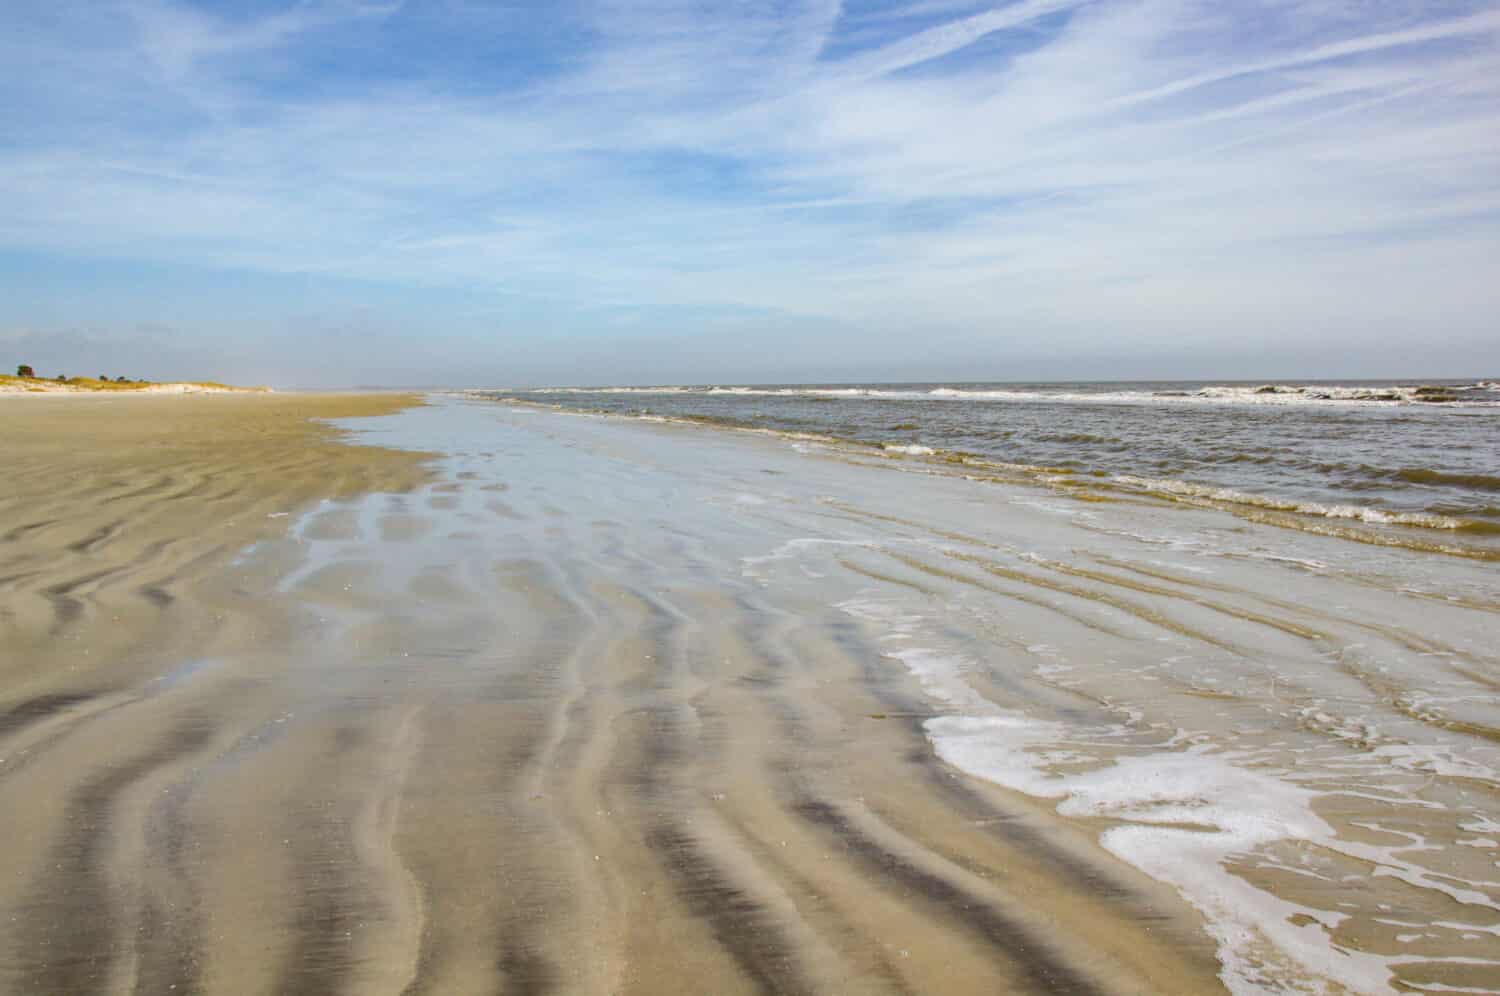 Una spiaggia senza persone.  Le dolci onde si infrangono sulla sabbia increspata di Sapelo Island, Carolina del Sud.